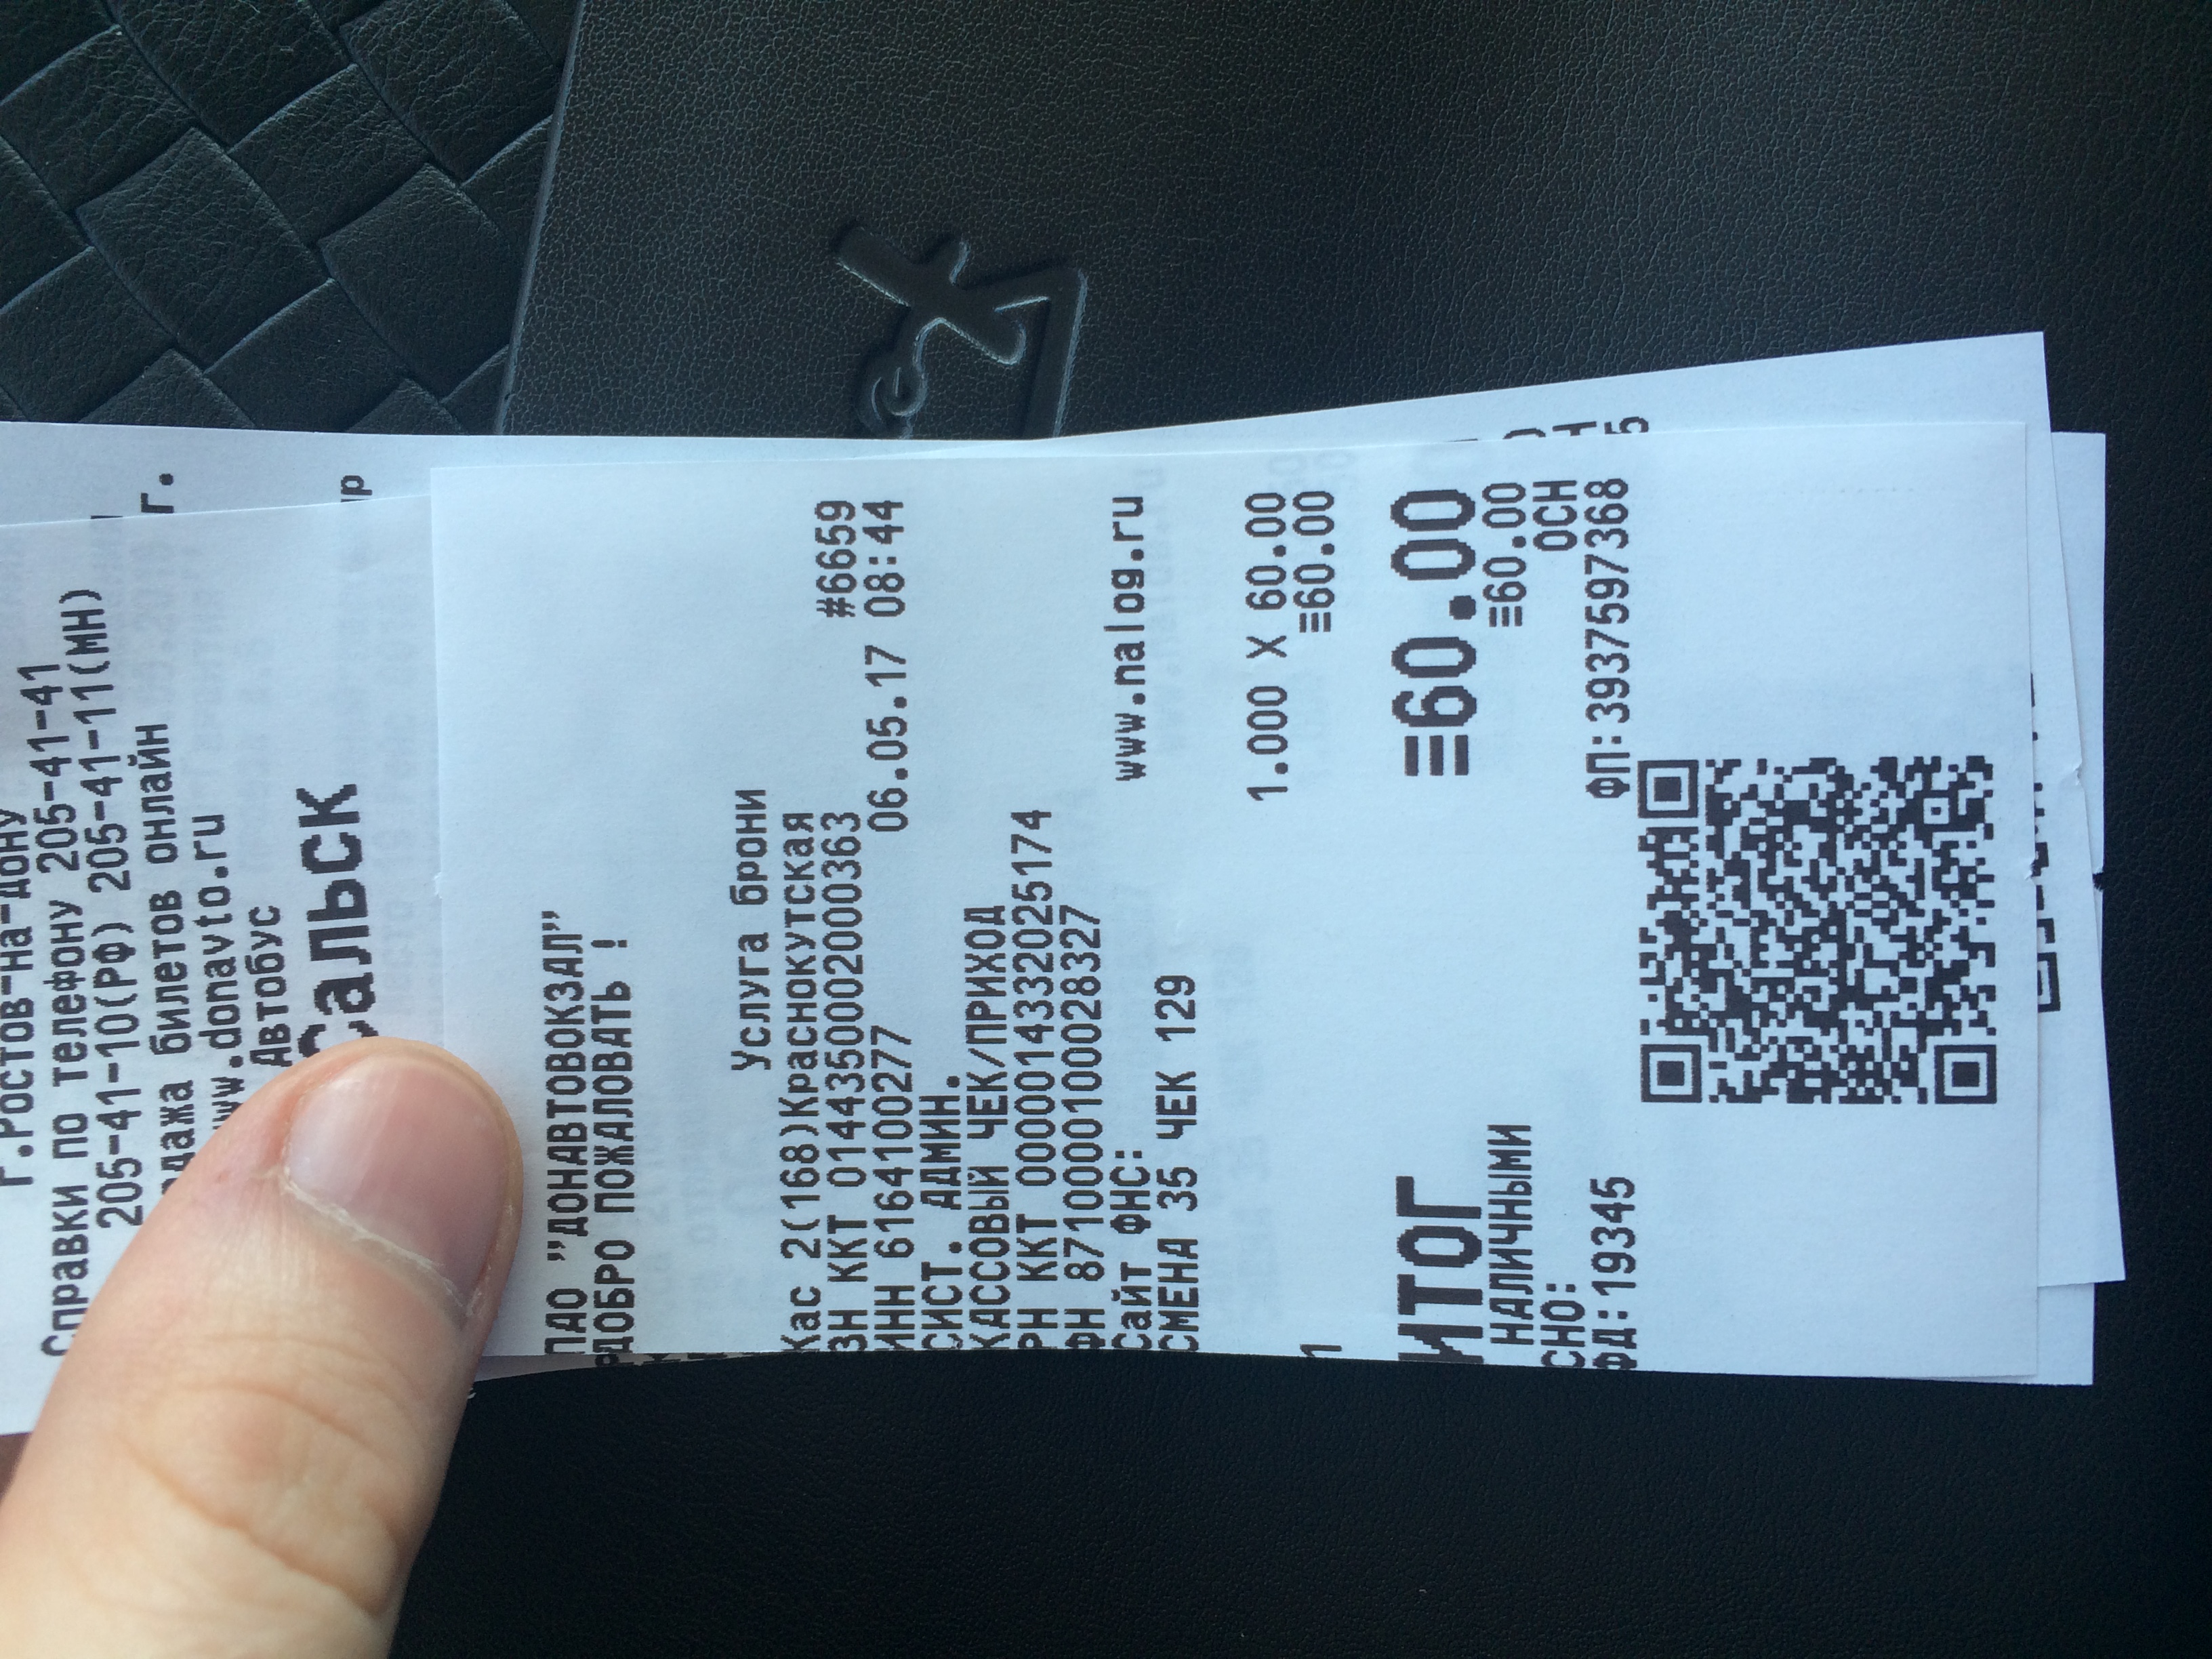 Наличие билетов на автобус москва